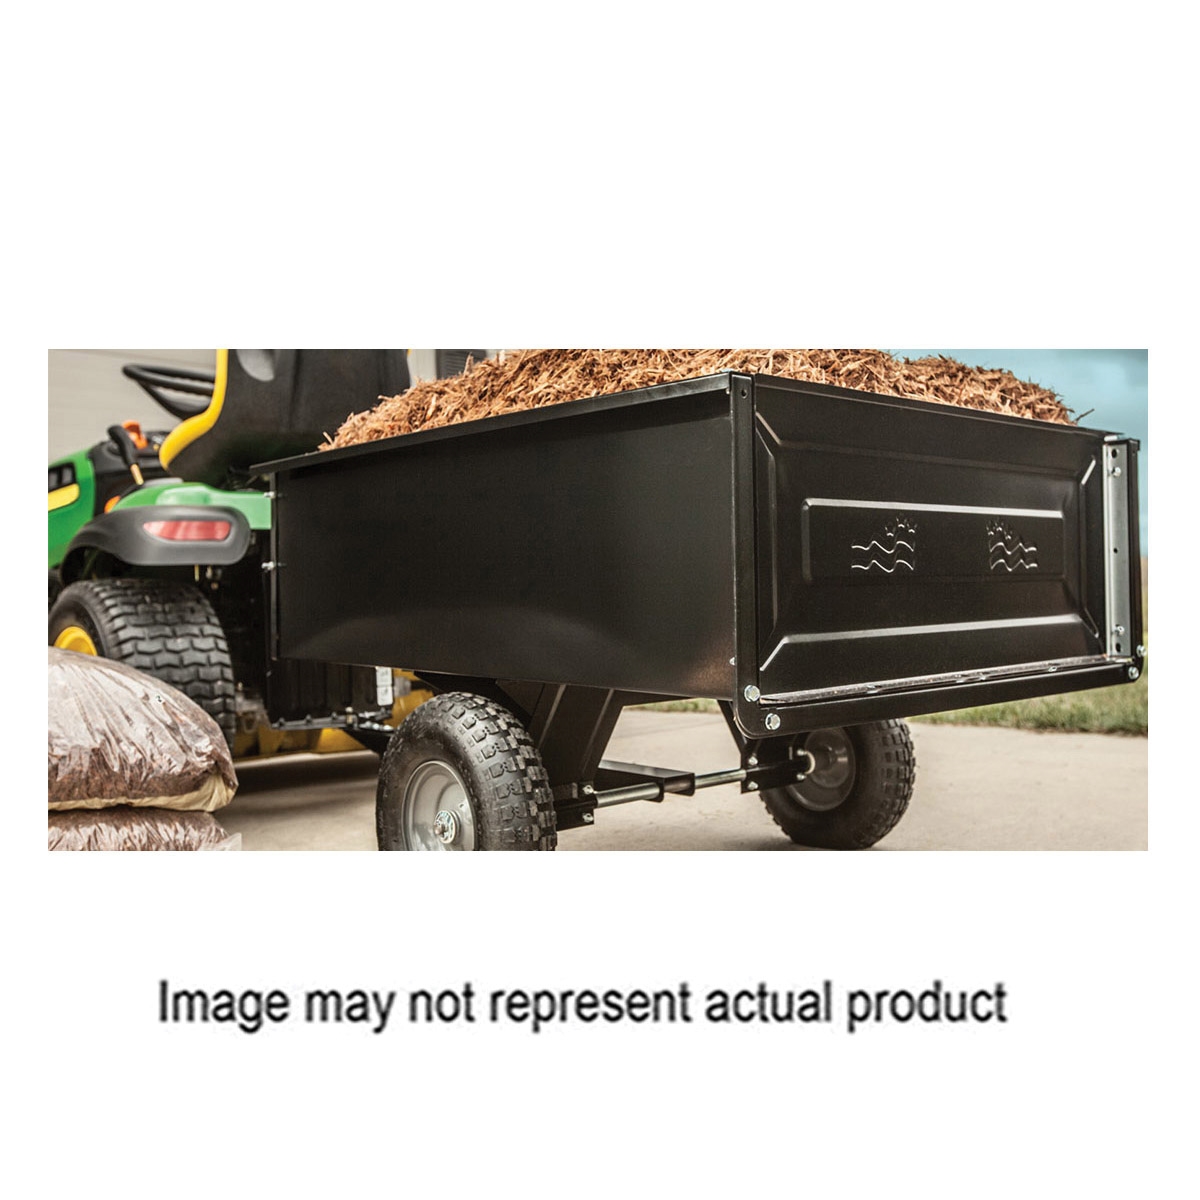 45-0303 Dump Cart, 350 lb, 41 x 31 x 12 in Deck, 13 x 4 in Wheel, Pneumatic Wheel, Black